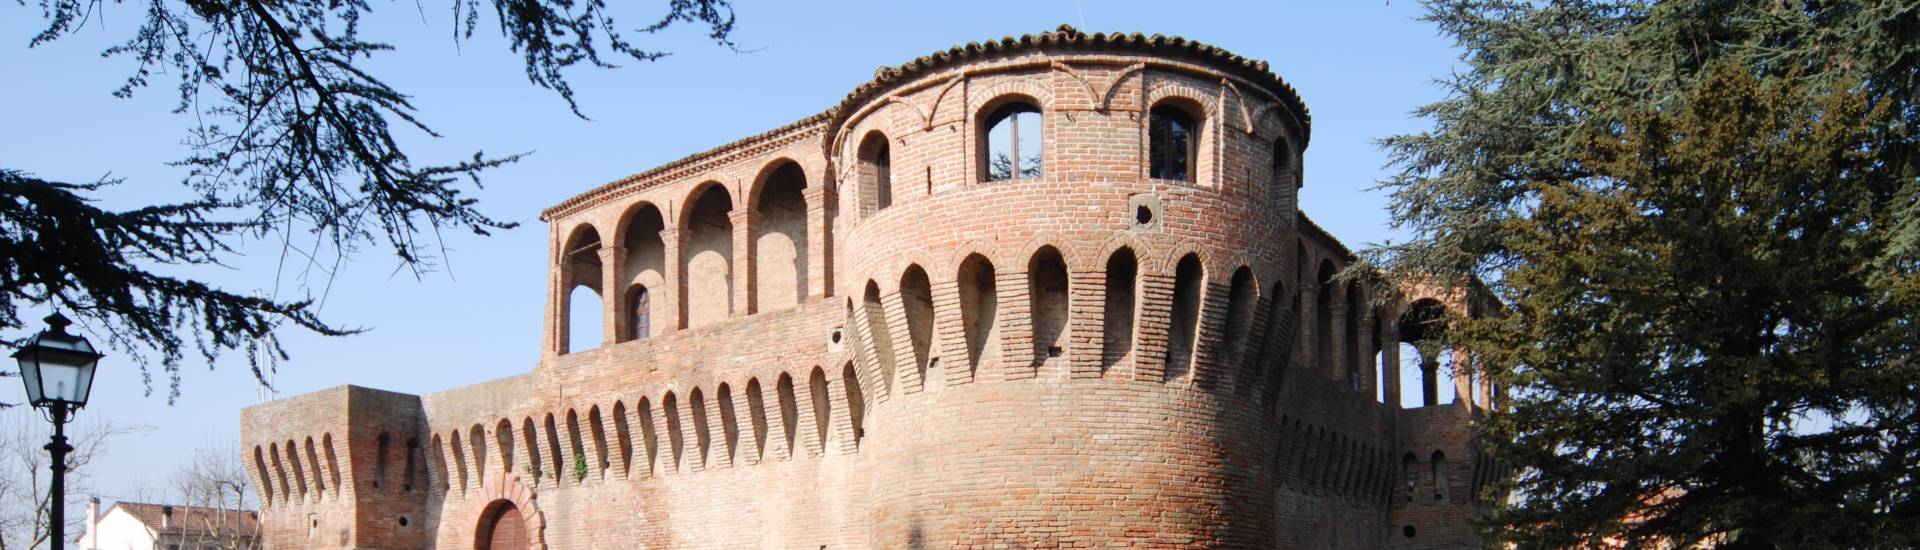 Rocca Sforzesca - Bagnara - Rocca Sforzesca - Bagnara di Romagna foto di: |Comune di Bagnara di Romagna| - Comune di Bagnara di Romagna